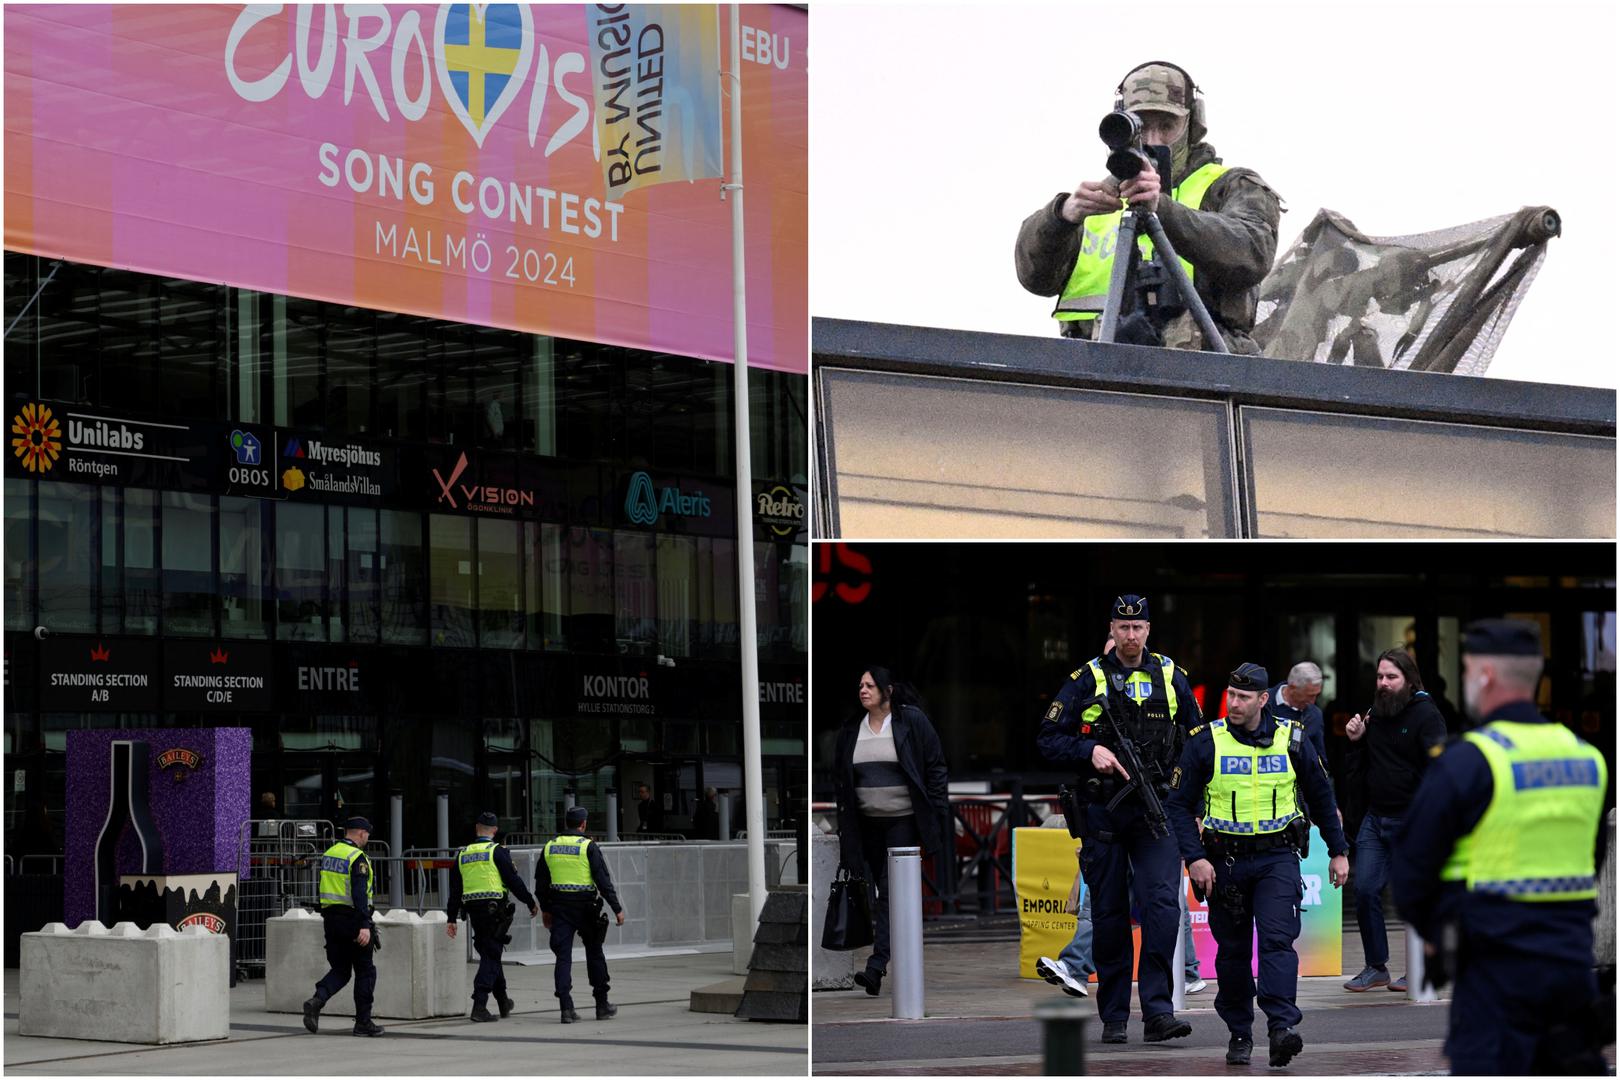 Policija u švedskom Malmöu ističe kako je "dobro pripremljena" za ovotjedni izbor za najbolju pjesmu Eurovizije. Natjecanje će se održati u Malmö Areni gdje su postavljene barijere te policija stražari. 